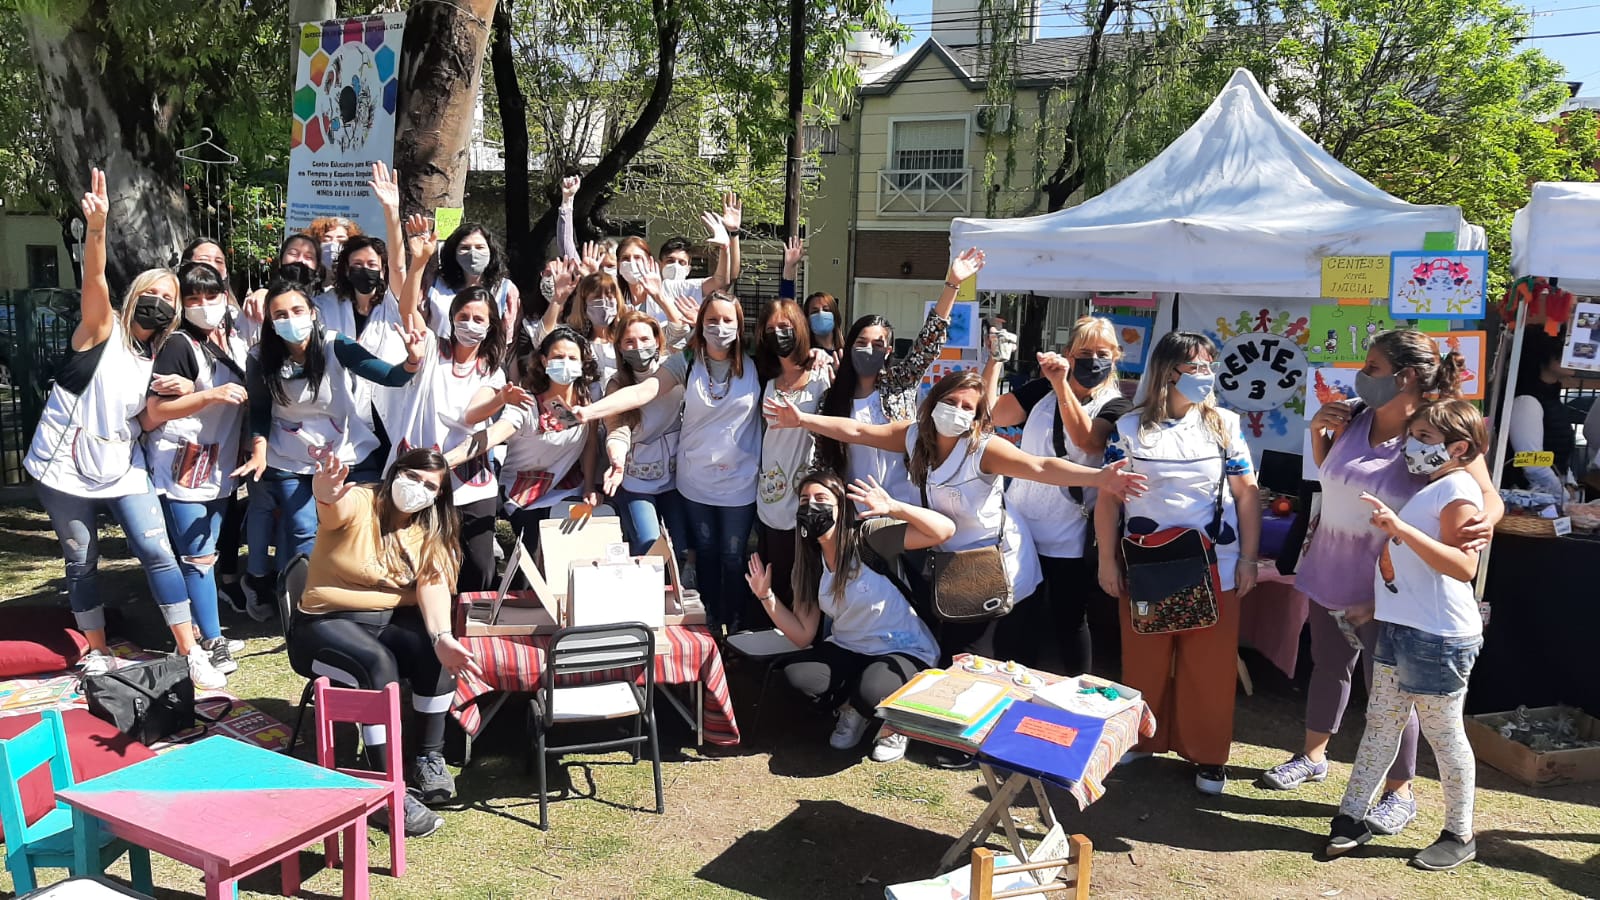 La plaza Las Toscaneras se vistió de fiesta, educación pública y solidaridad | Gran jornada organizada por las Cooperadoras de la Comuna 10